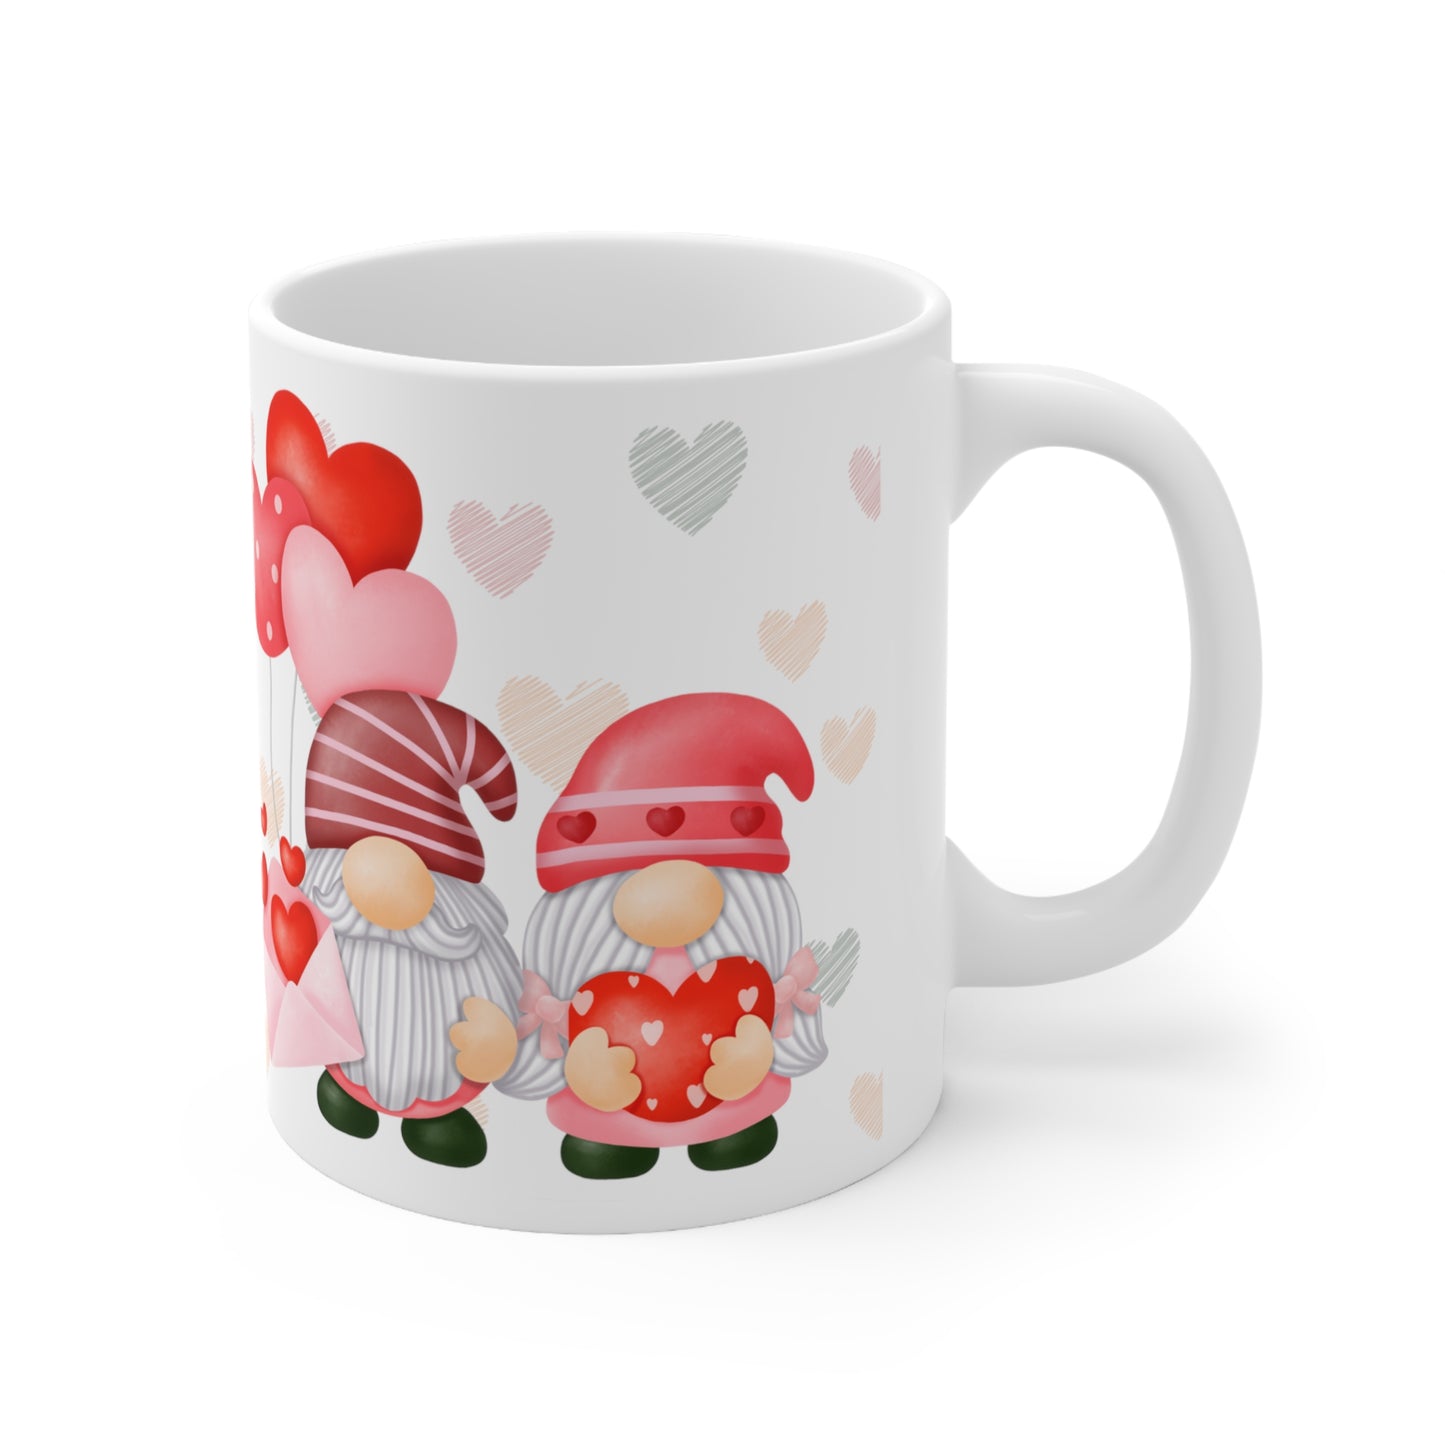 Ceramic Mug Love 2